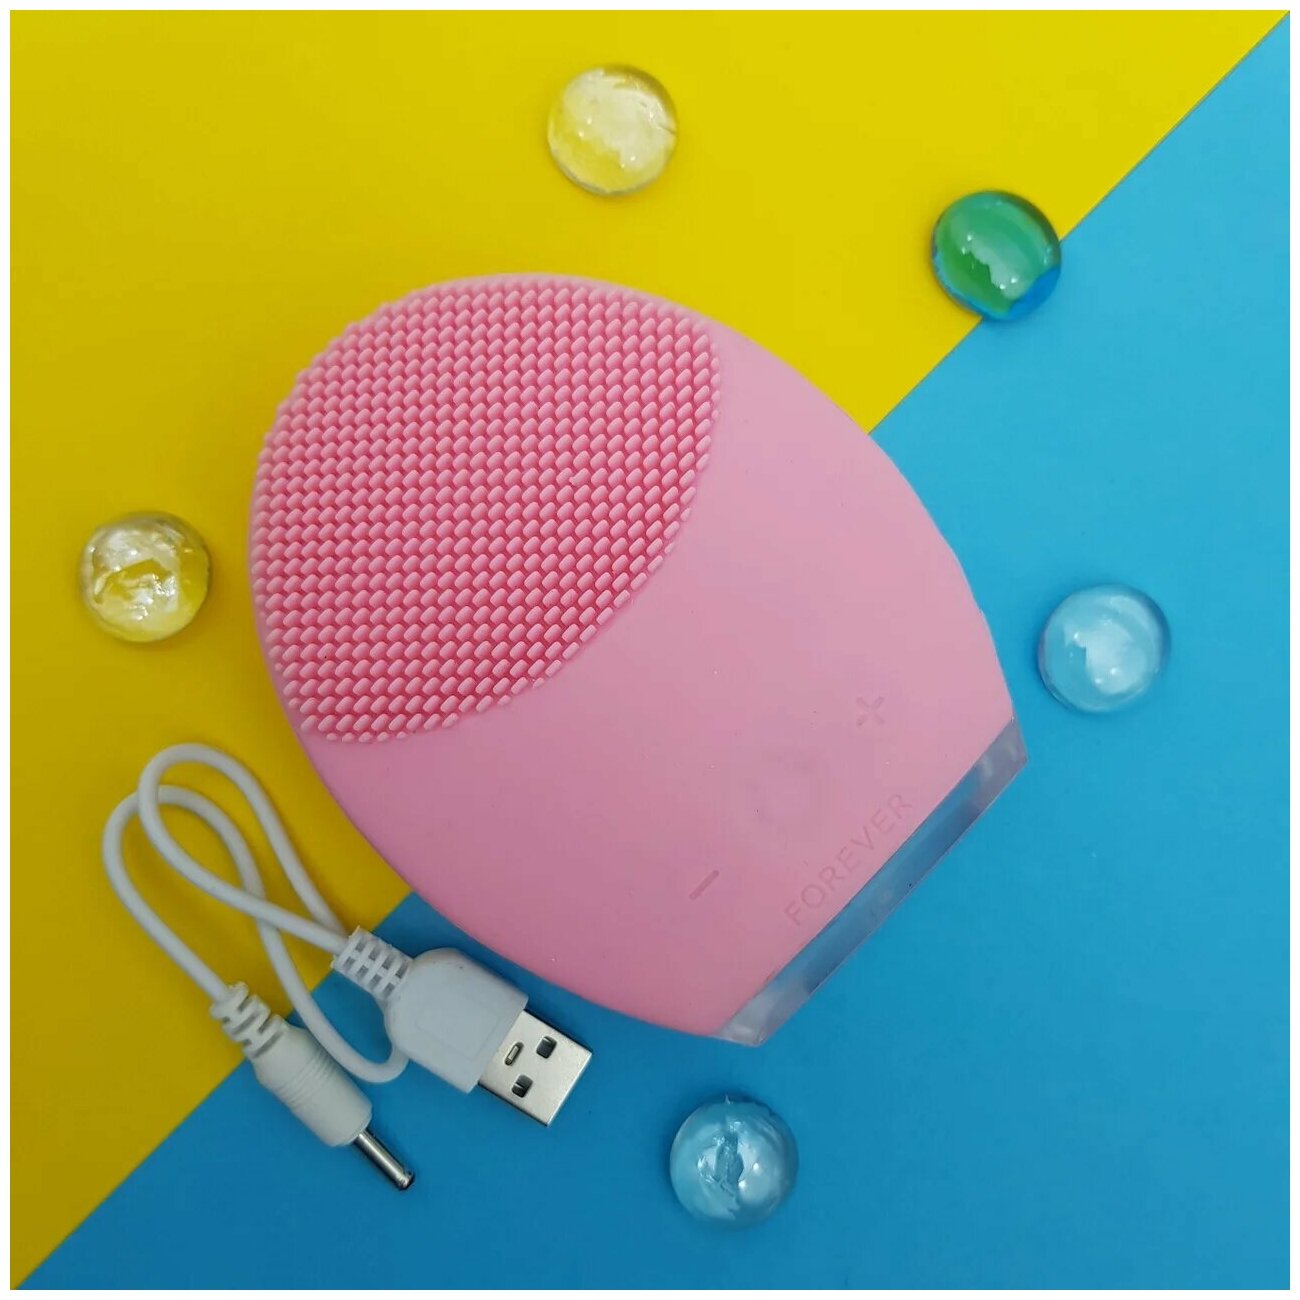 Электрическая щётка Forever Cleanse Face для чистики и массажа лица розовая